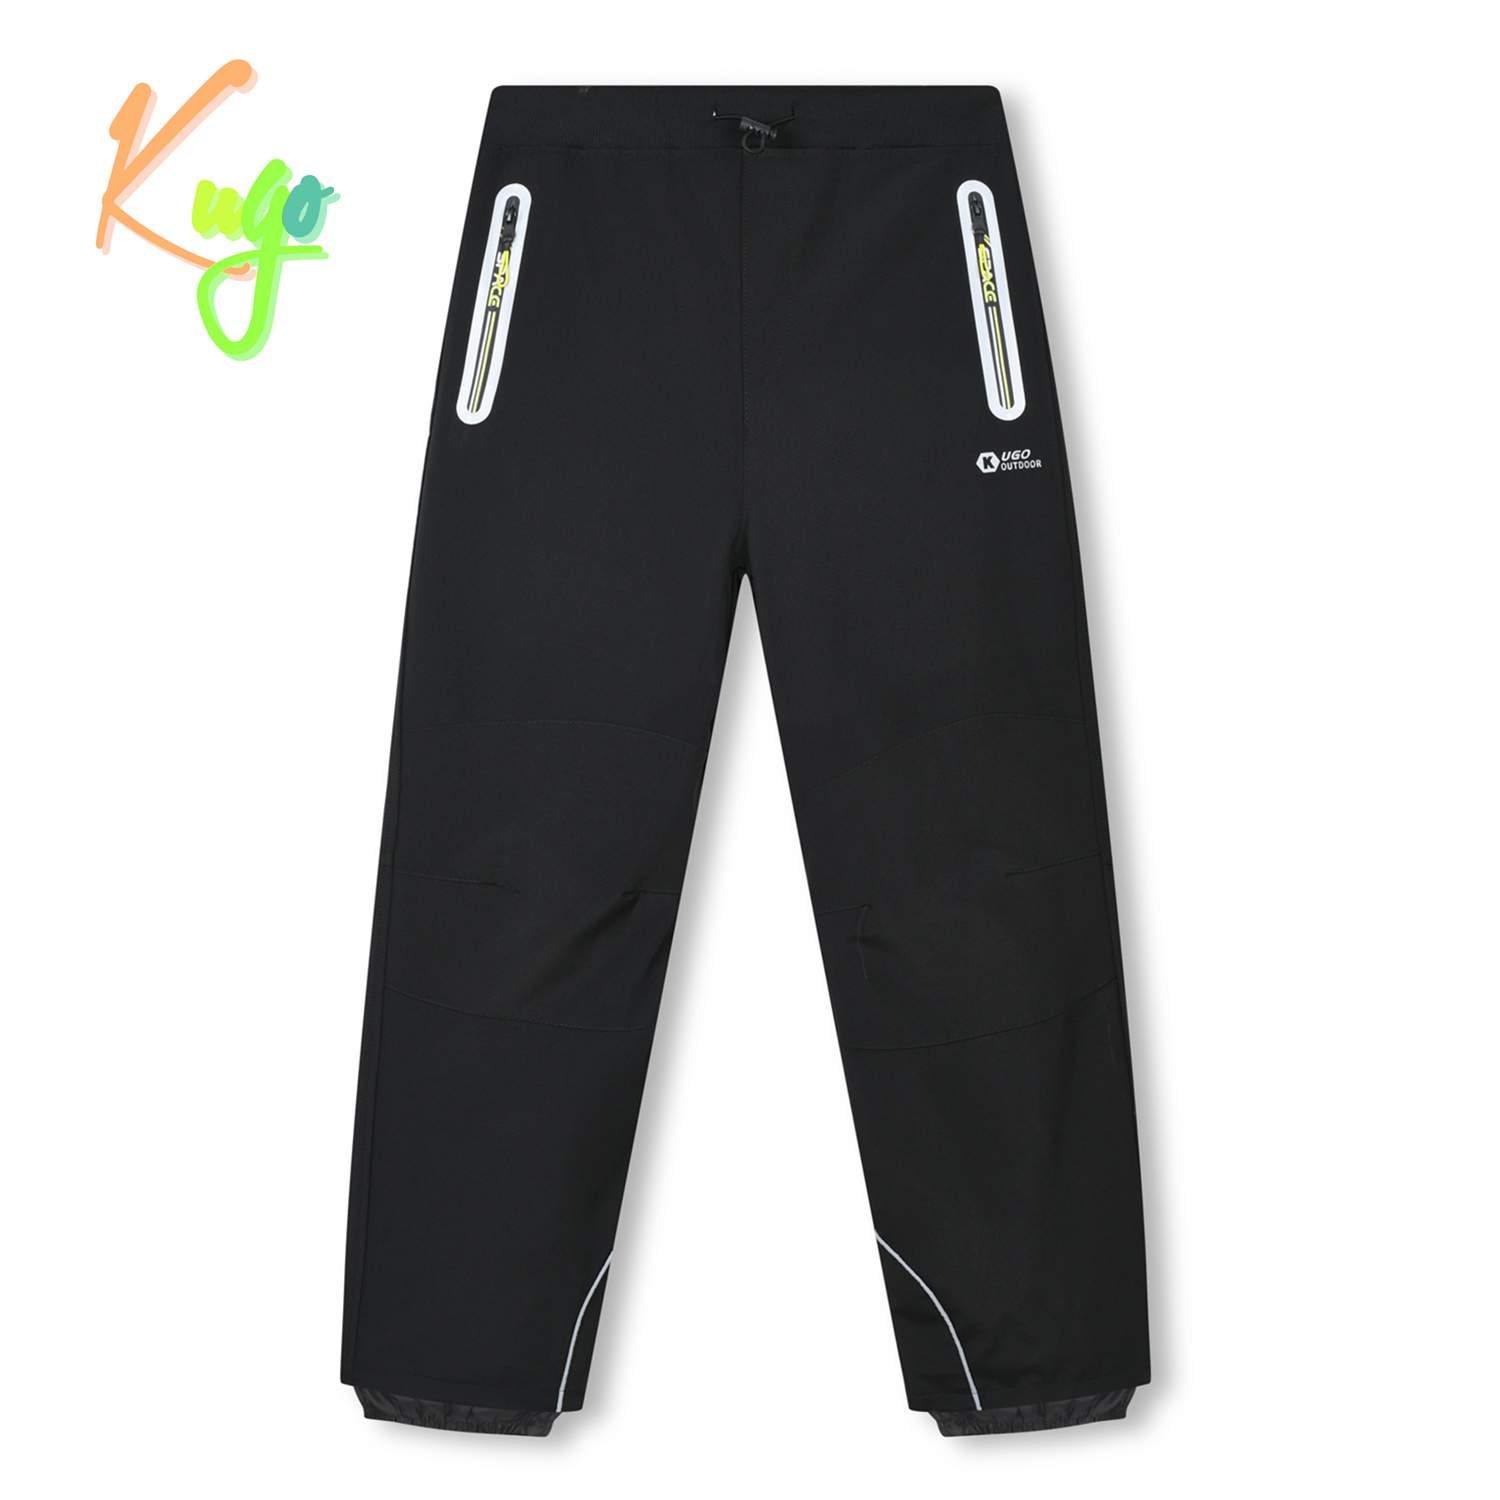 Chlapecké softshellové kalhoty - KUGO HK3119, černá / signální zipy Barva: Černá, Velikost: 134